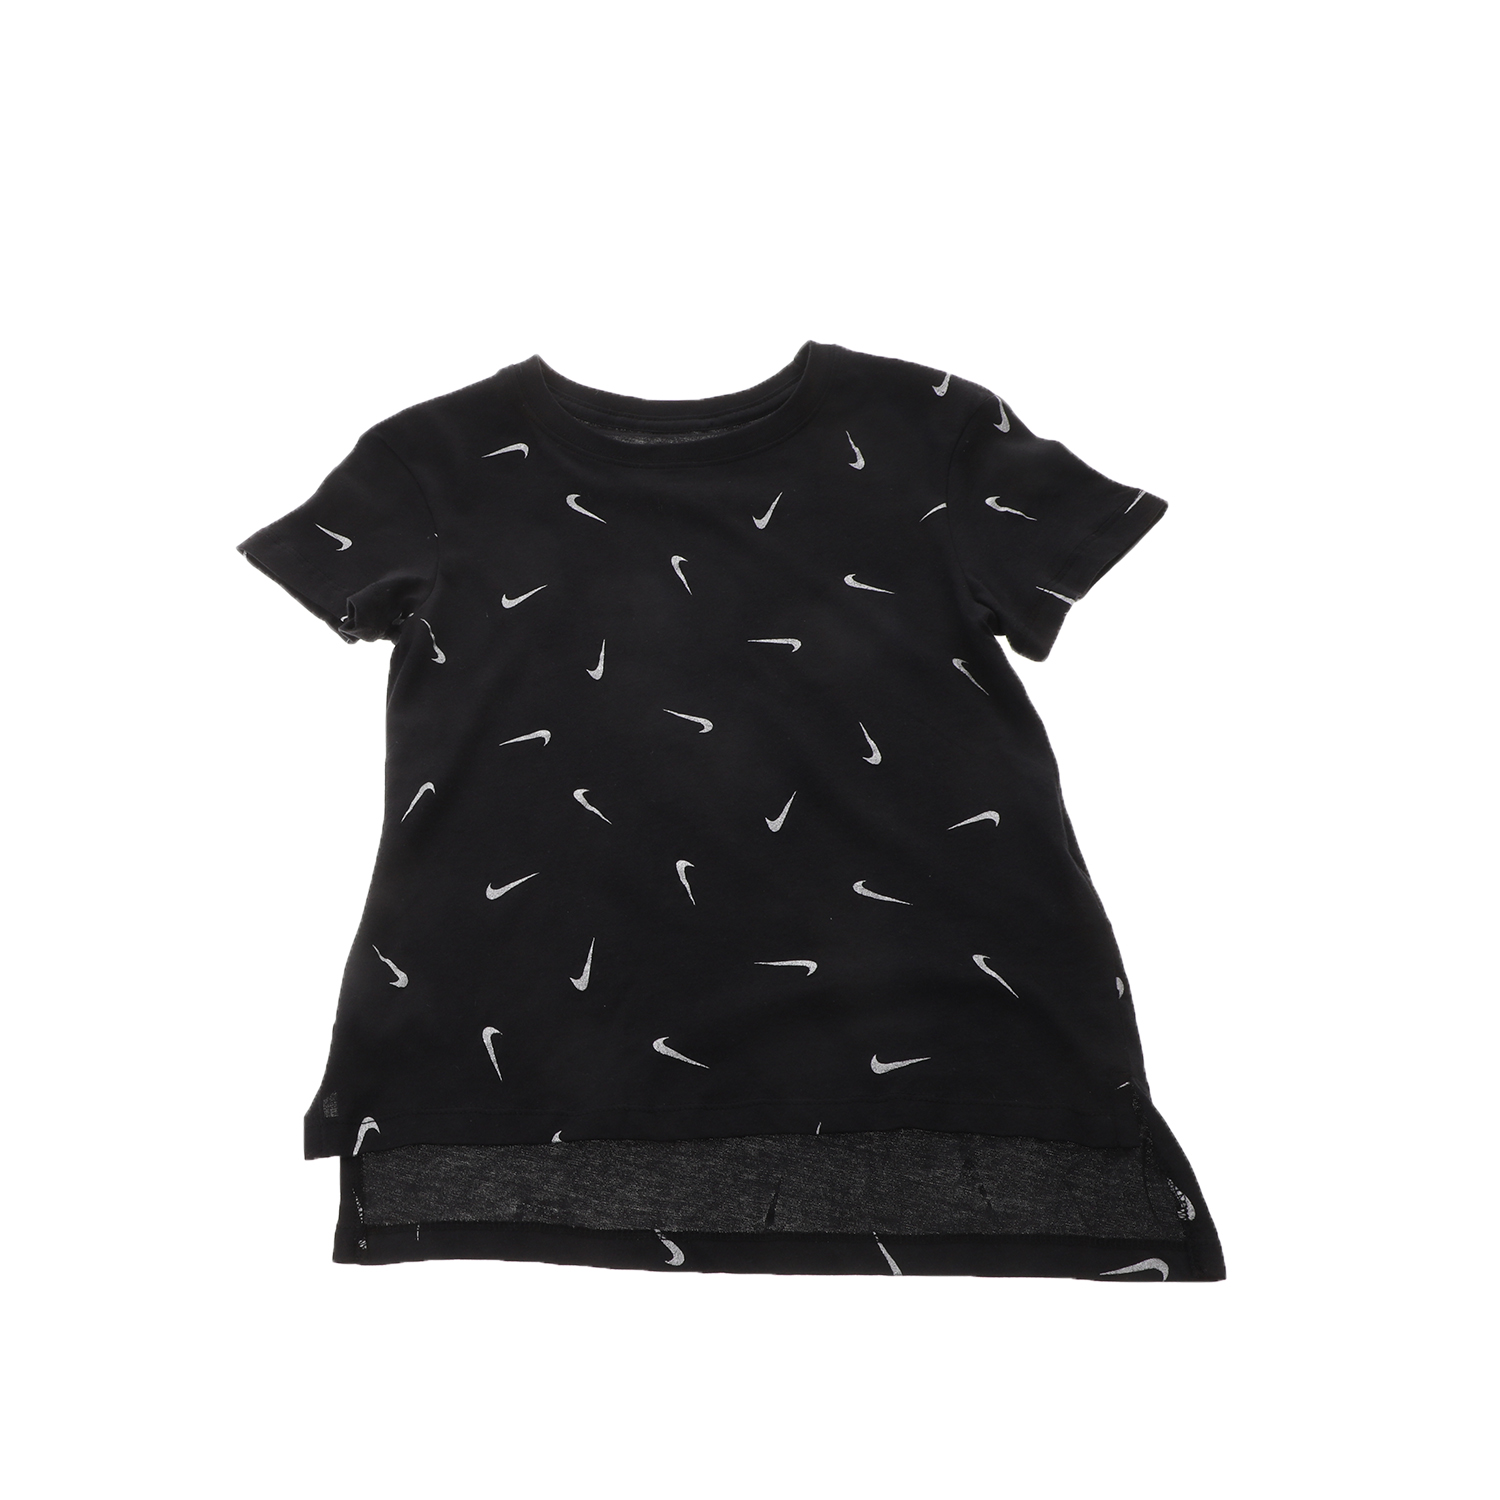 Παιδικά/Girls/Ρούχα/Αθλητικά NIKE - Παιδικό t-shirt NIKE NSW TEE DPTL SWOOSHFETTI μαύρο